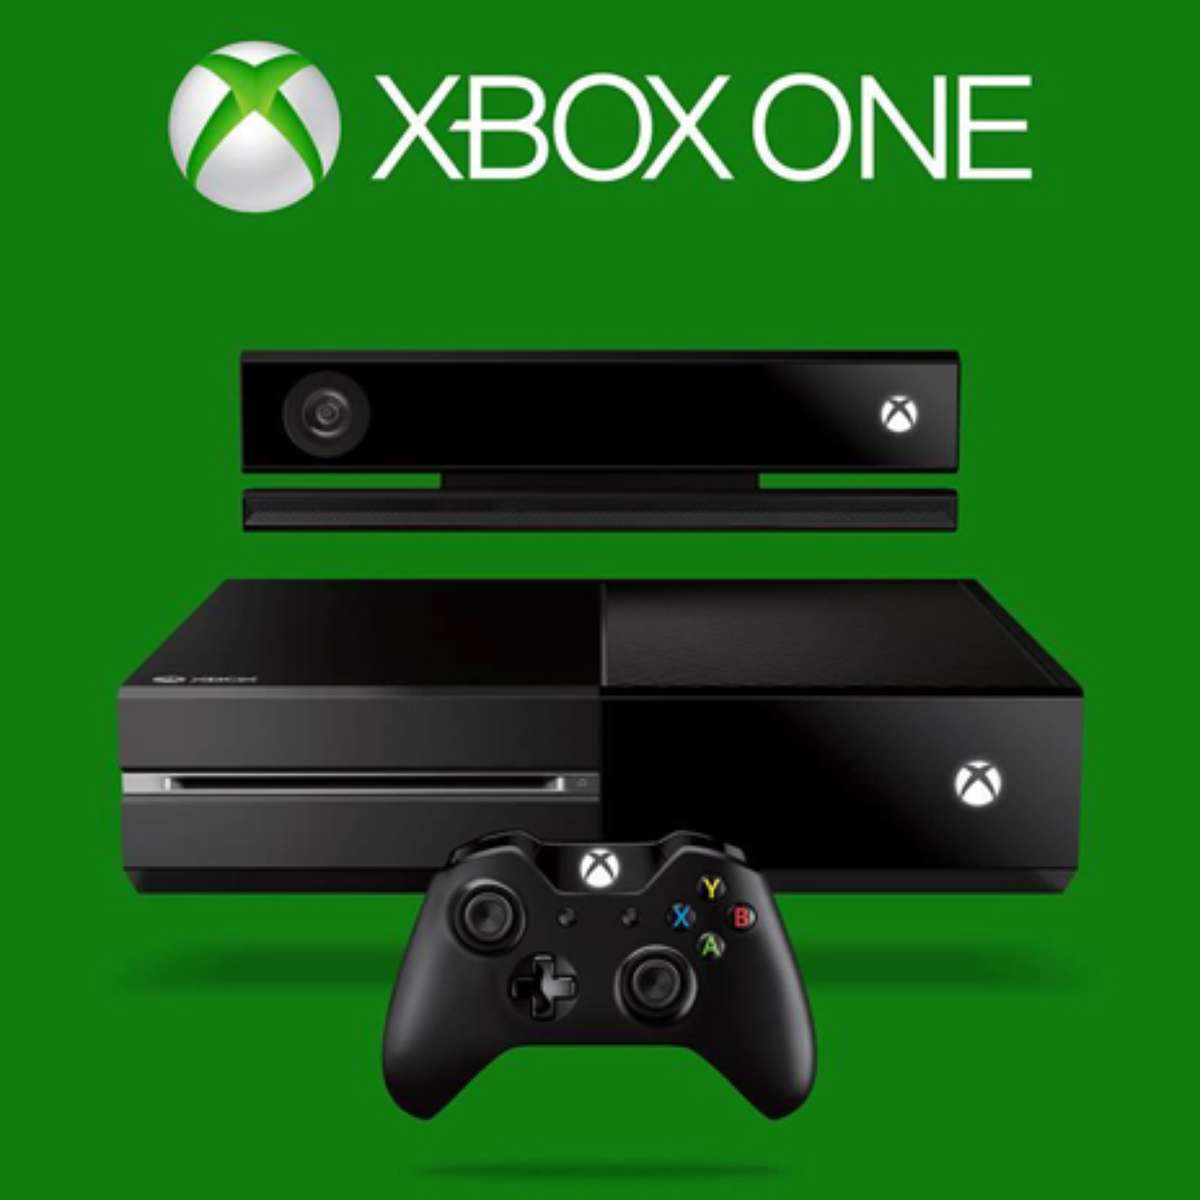 Xbox 360 + Kinect + Jogos  Console de Videogame Xbox Usado